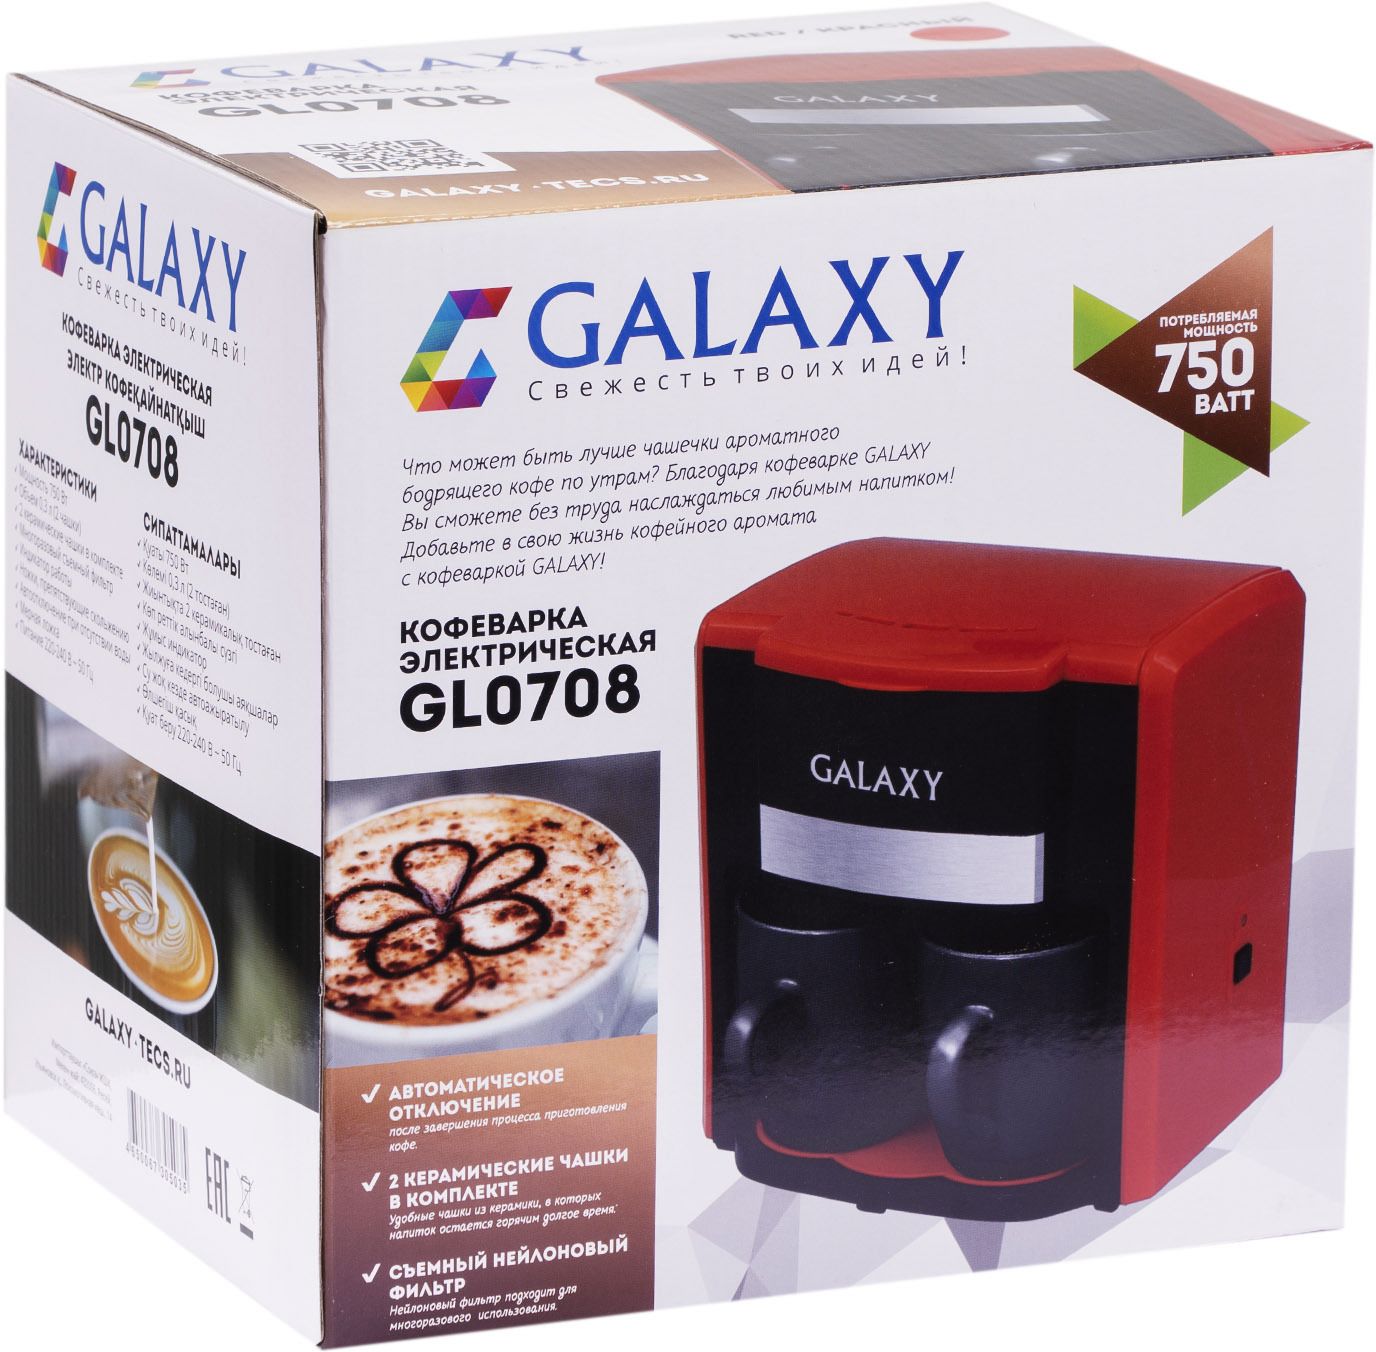  Galaxy GL 0708, , 